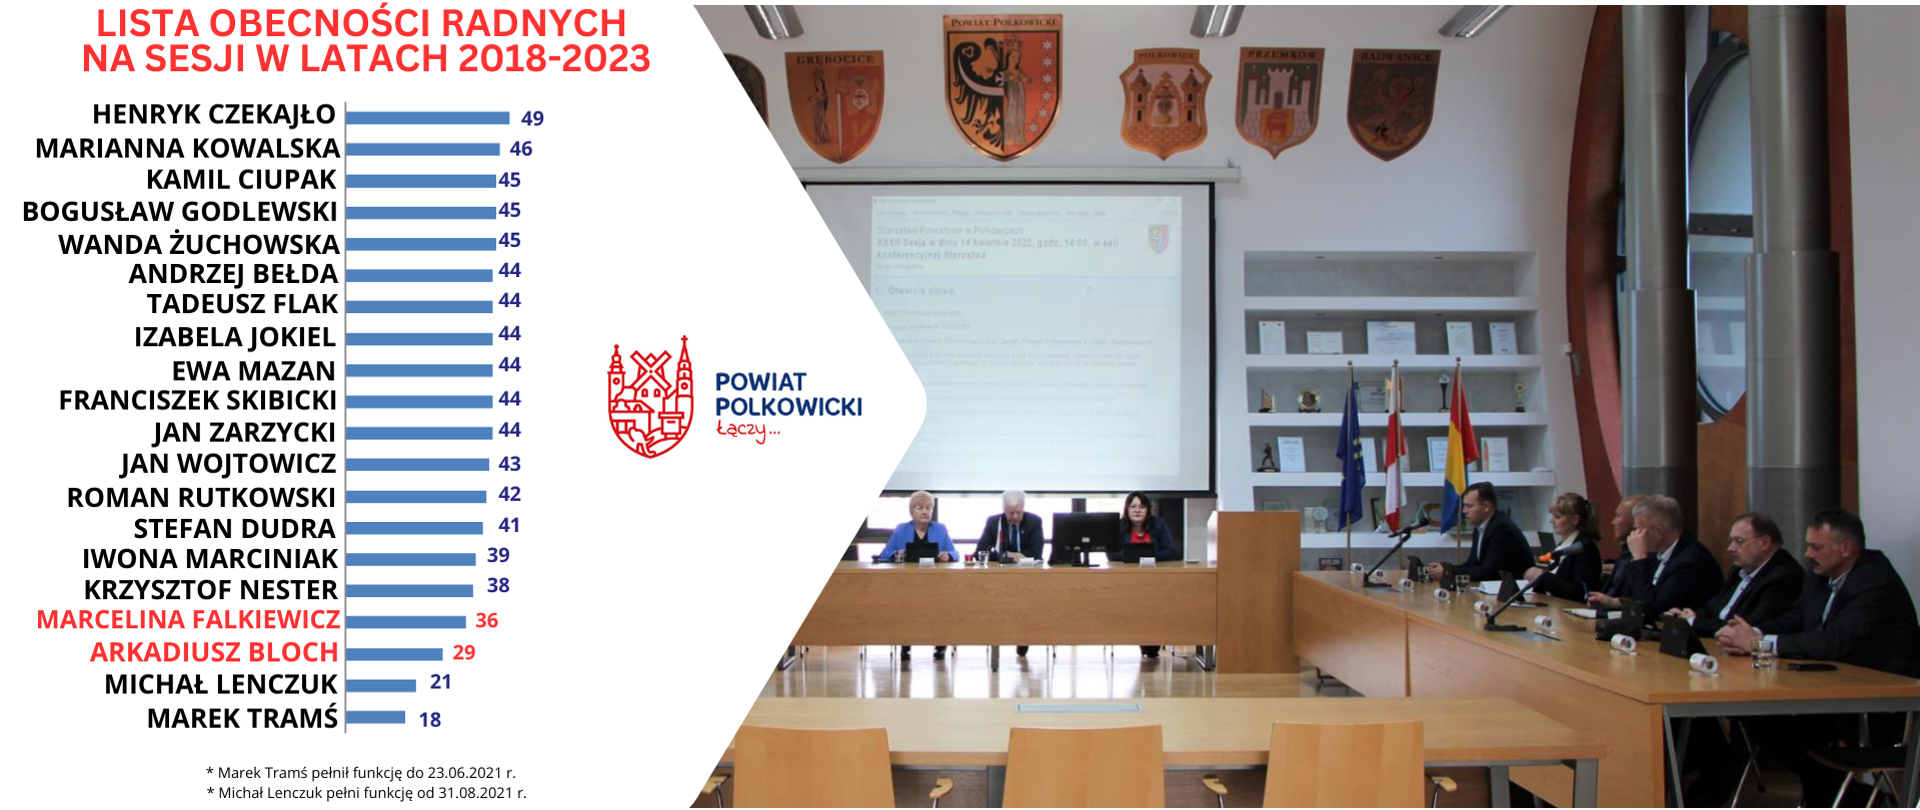 radni powiatu polkowickiego obradują podczas sesji 